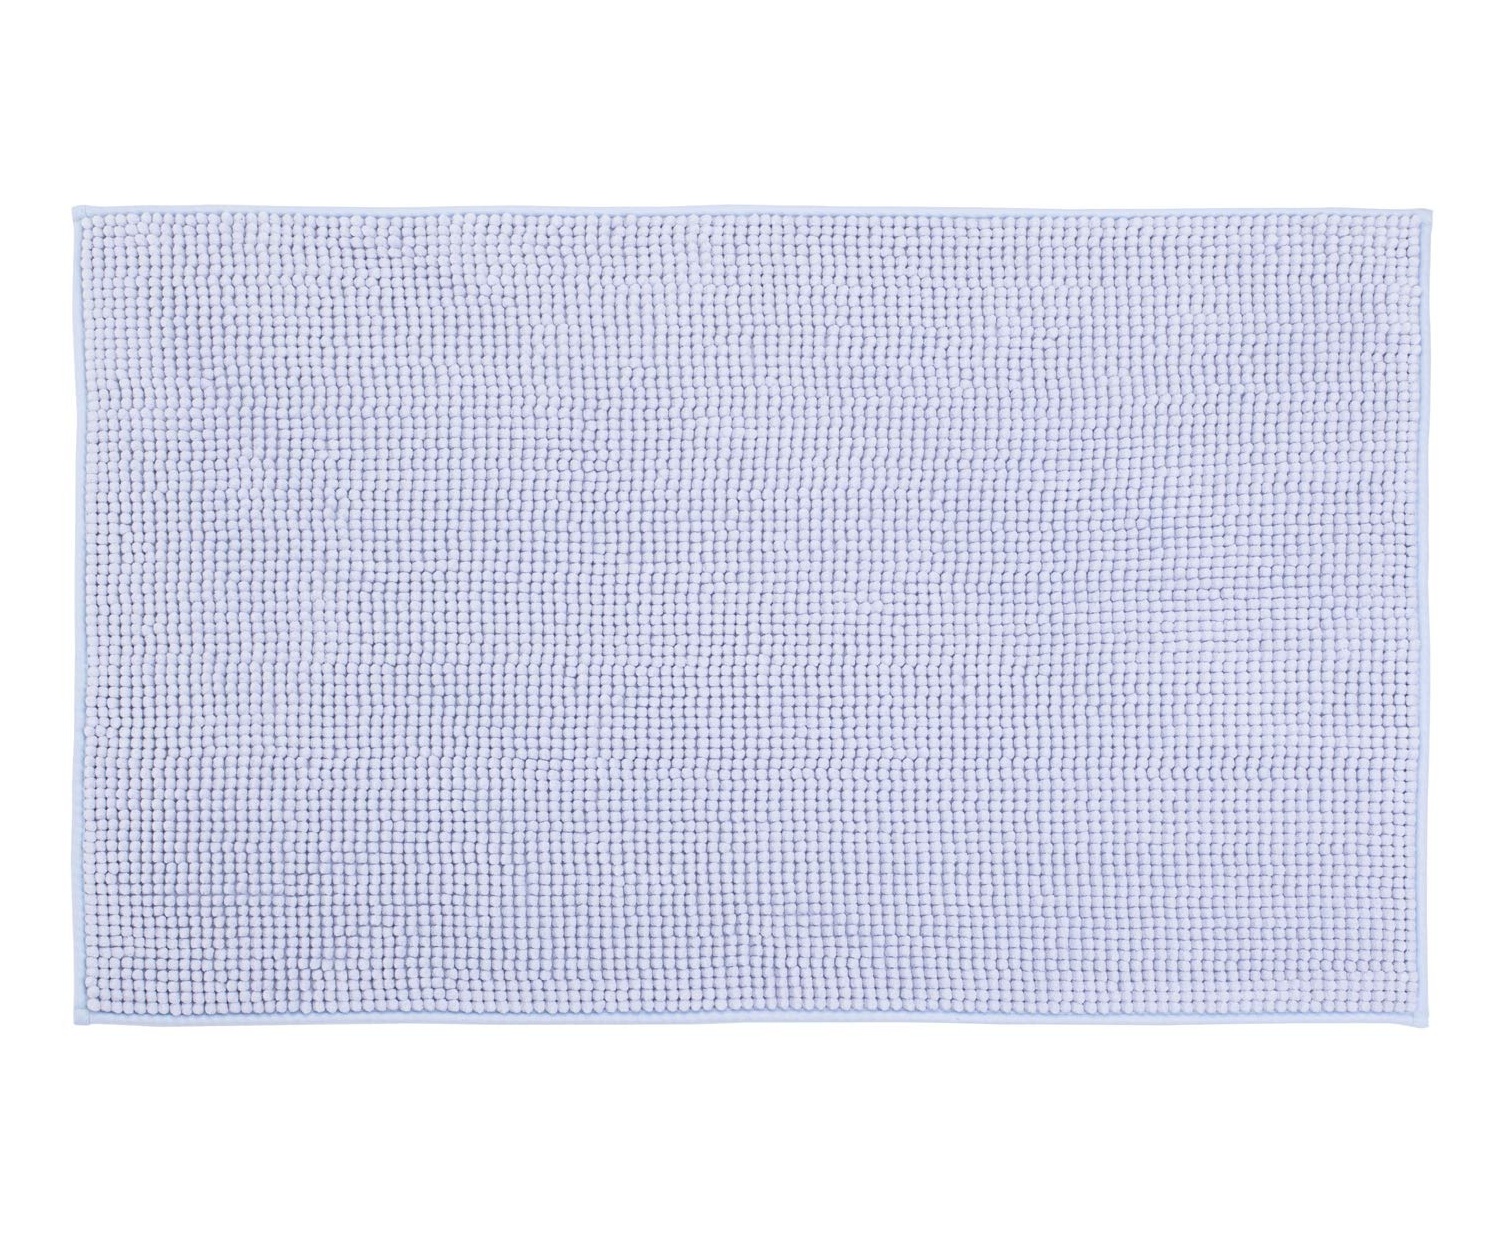 gzze mikrofaser badteppich, 70 x 120 cm